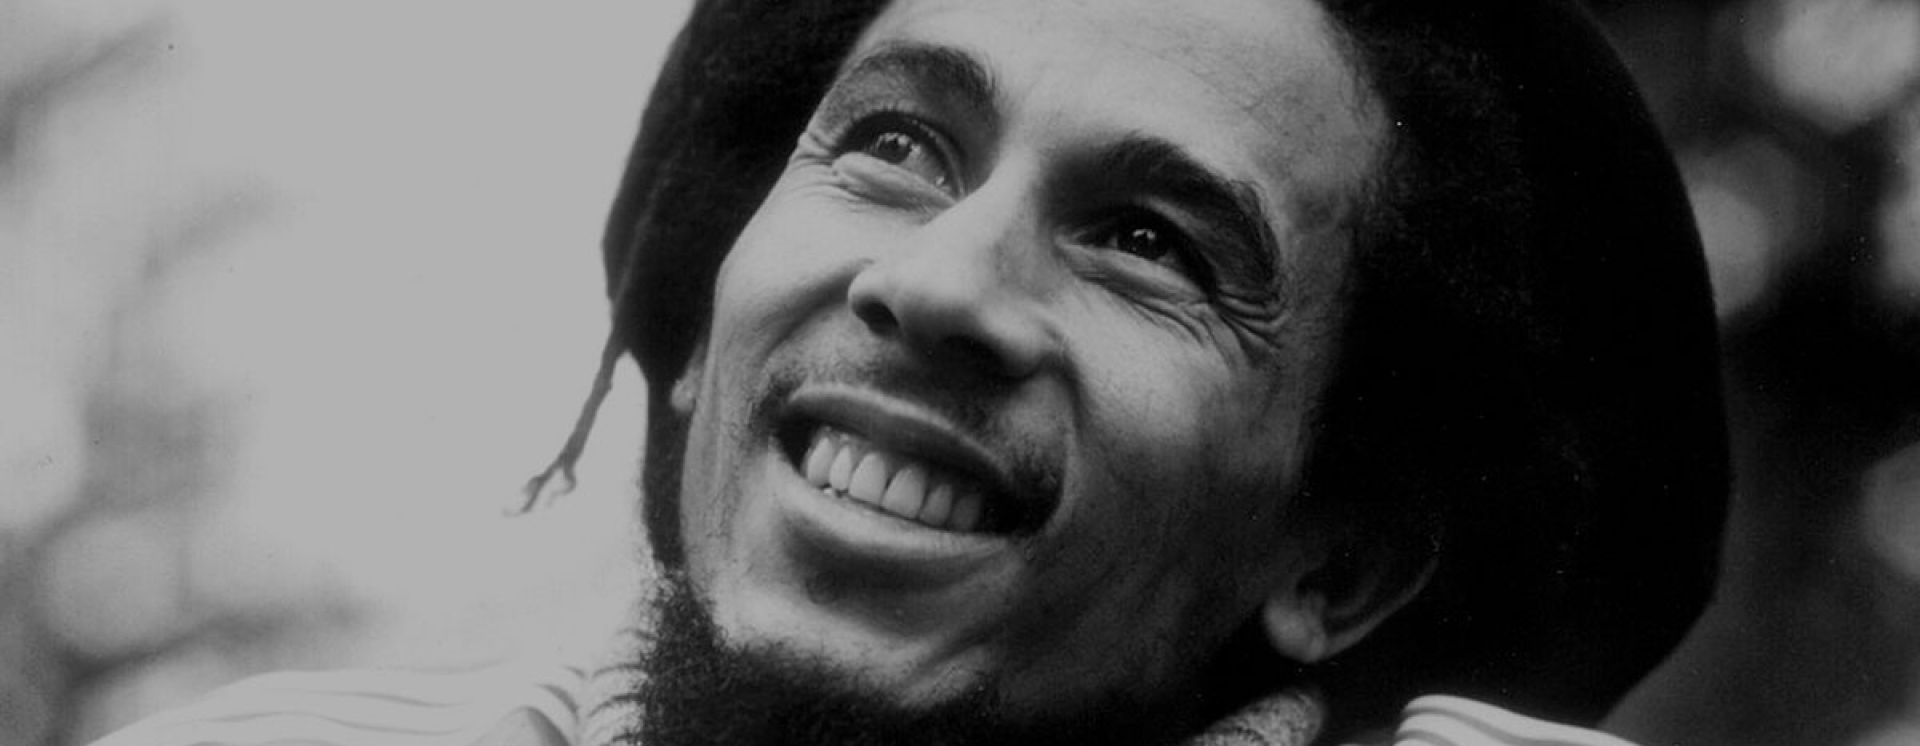 O αξεπέραστος Bob Marley κι η λατρεία του για το ποδόσφαιρο!